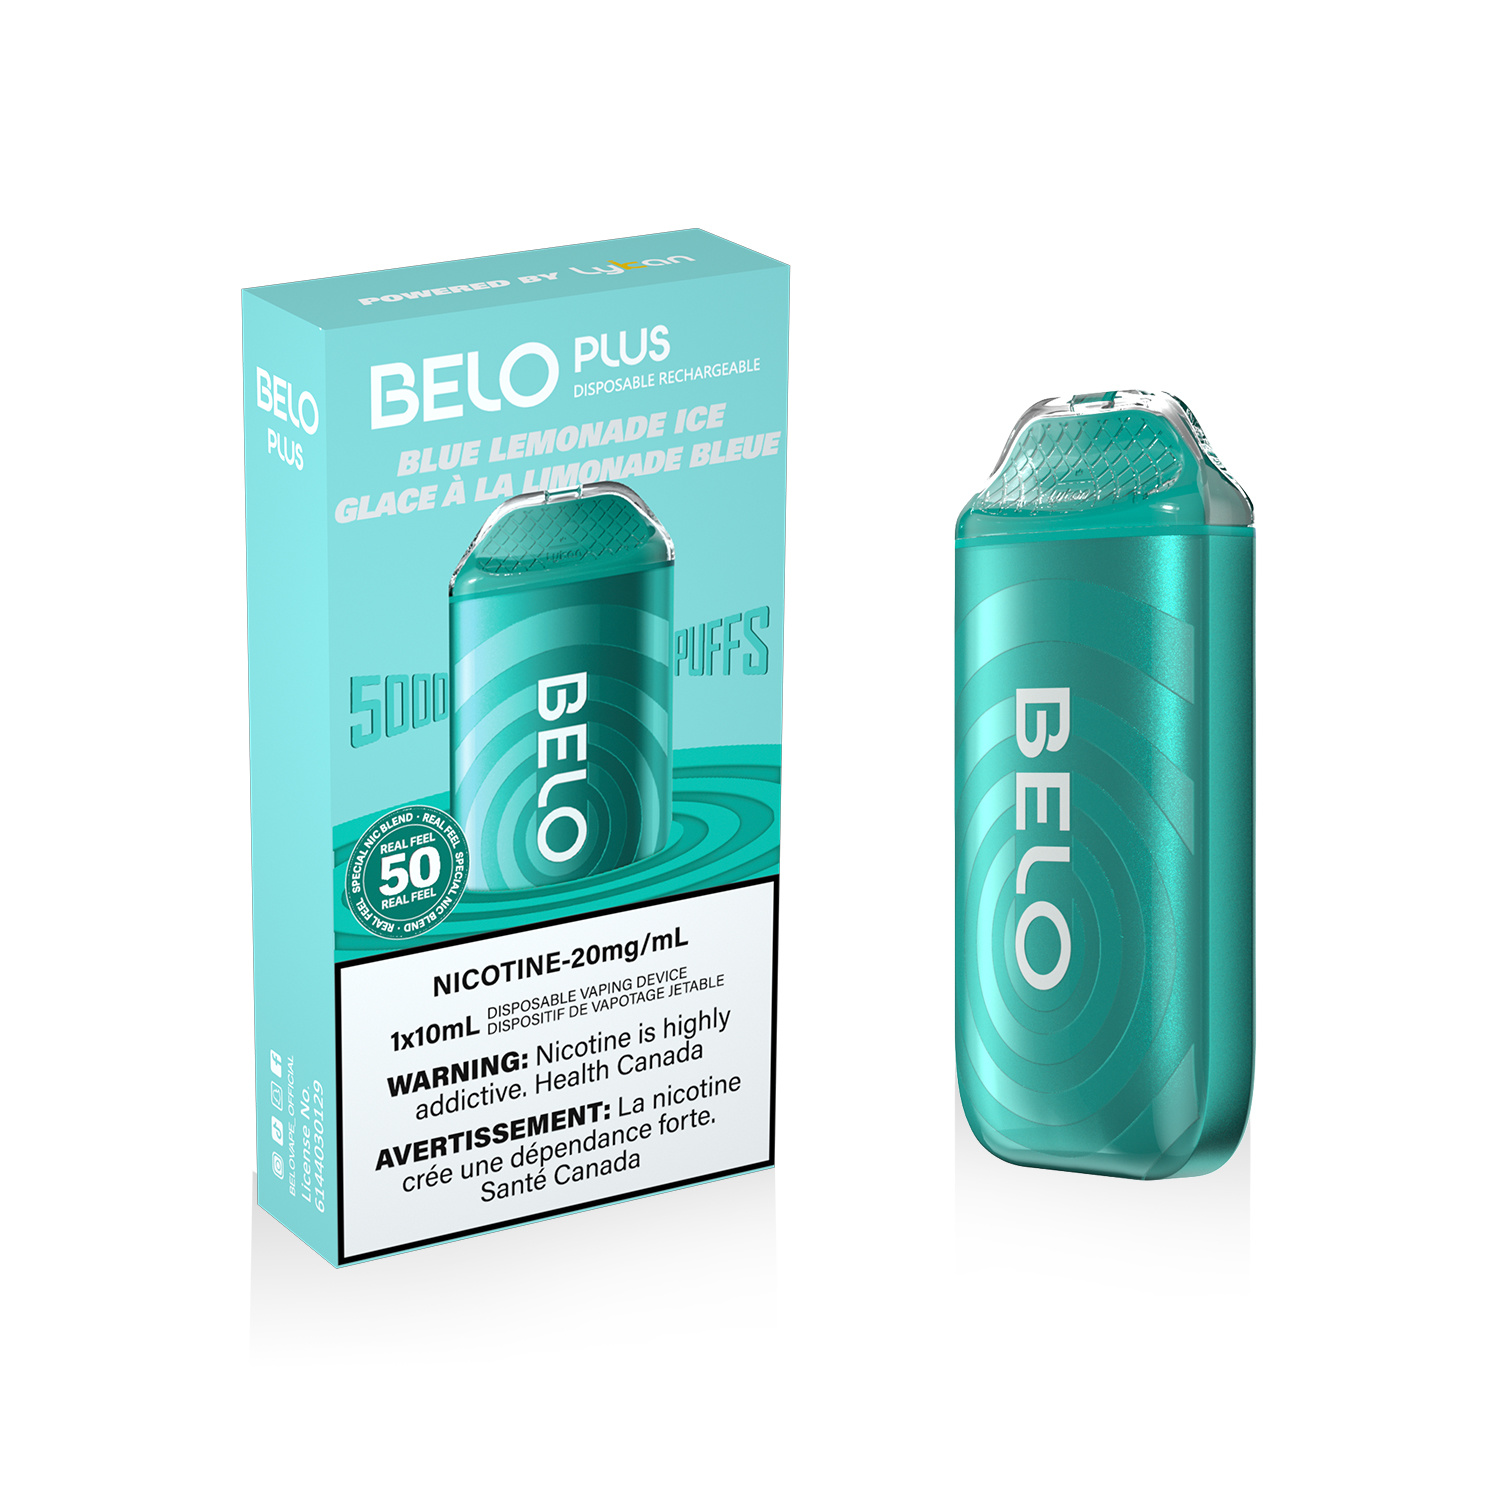 BELO BELO Plus - Blue Lemonade Ice (Excise Taxed)